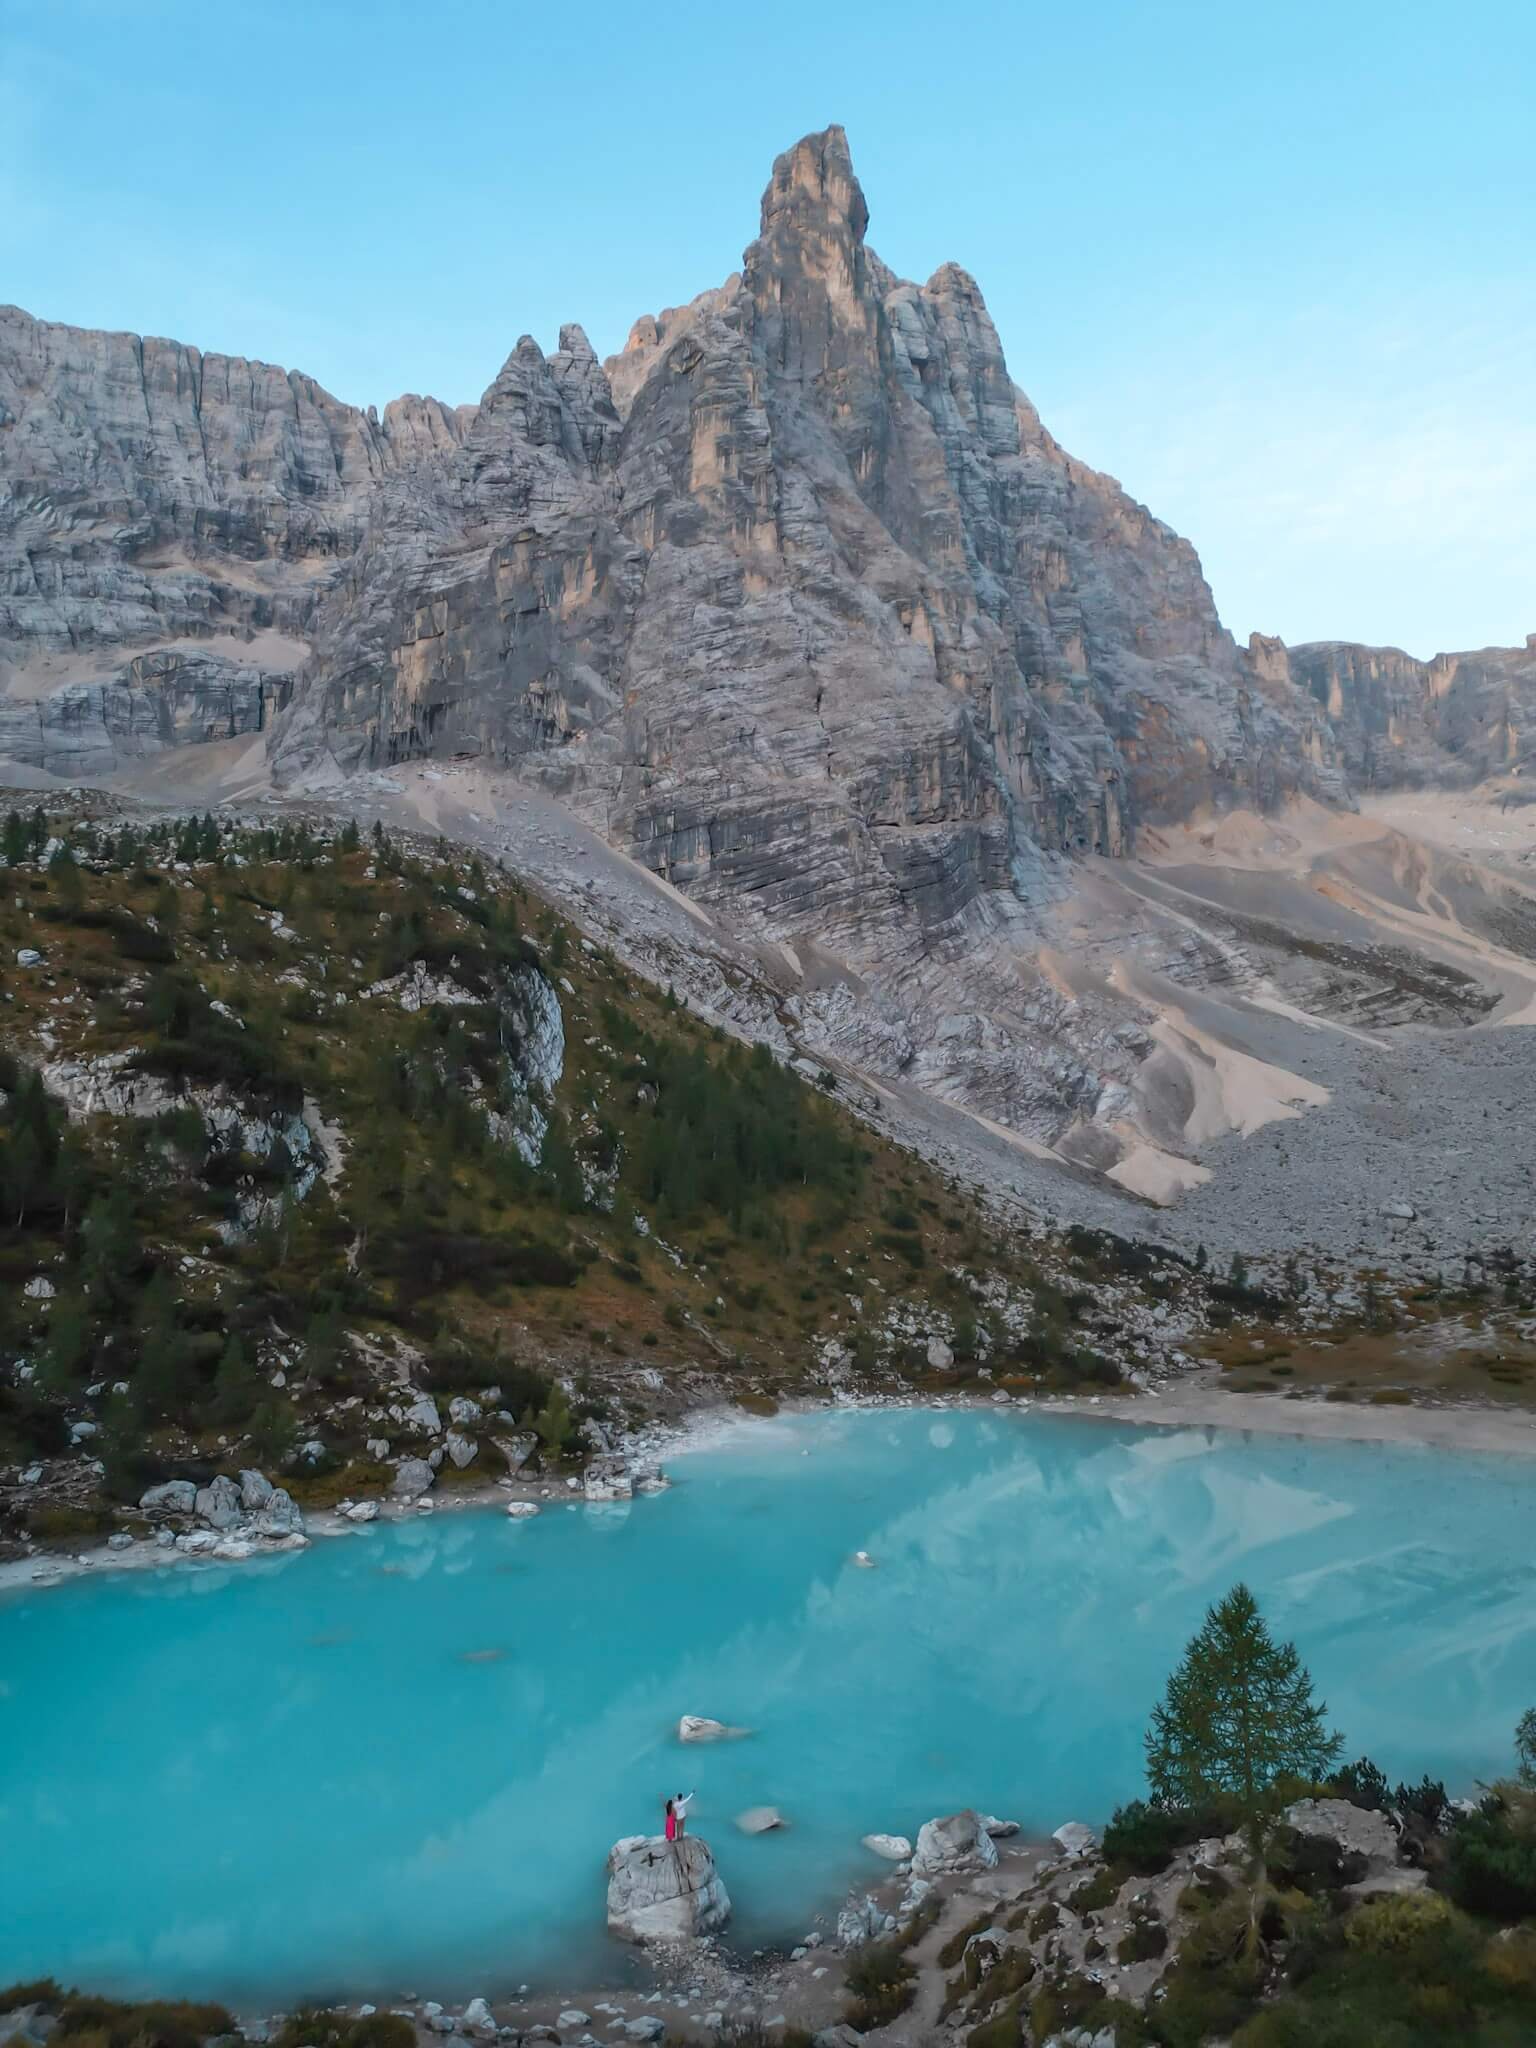 Lago di Sorapis in the Dolomites, Italy